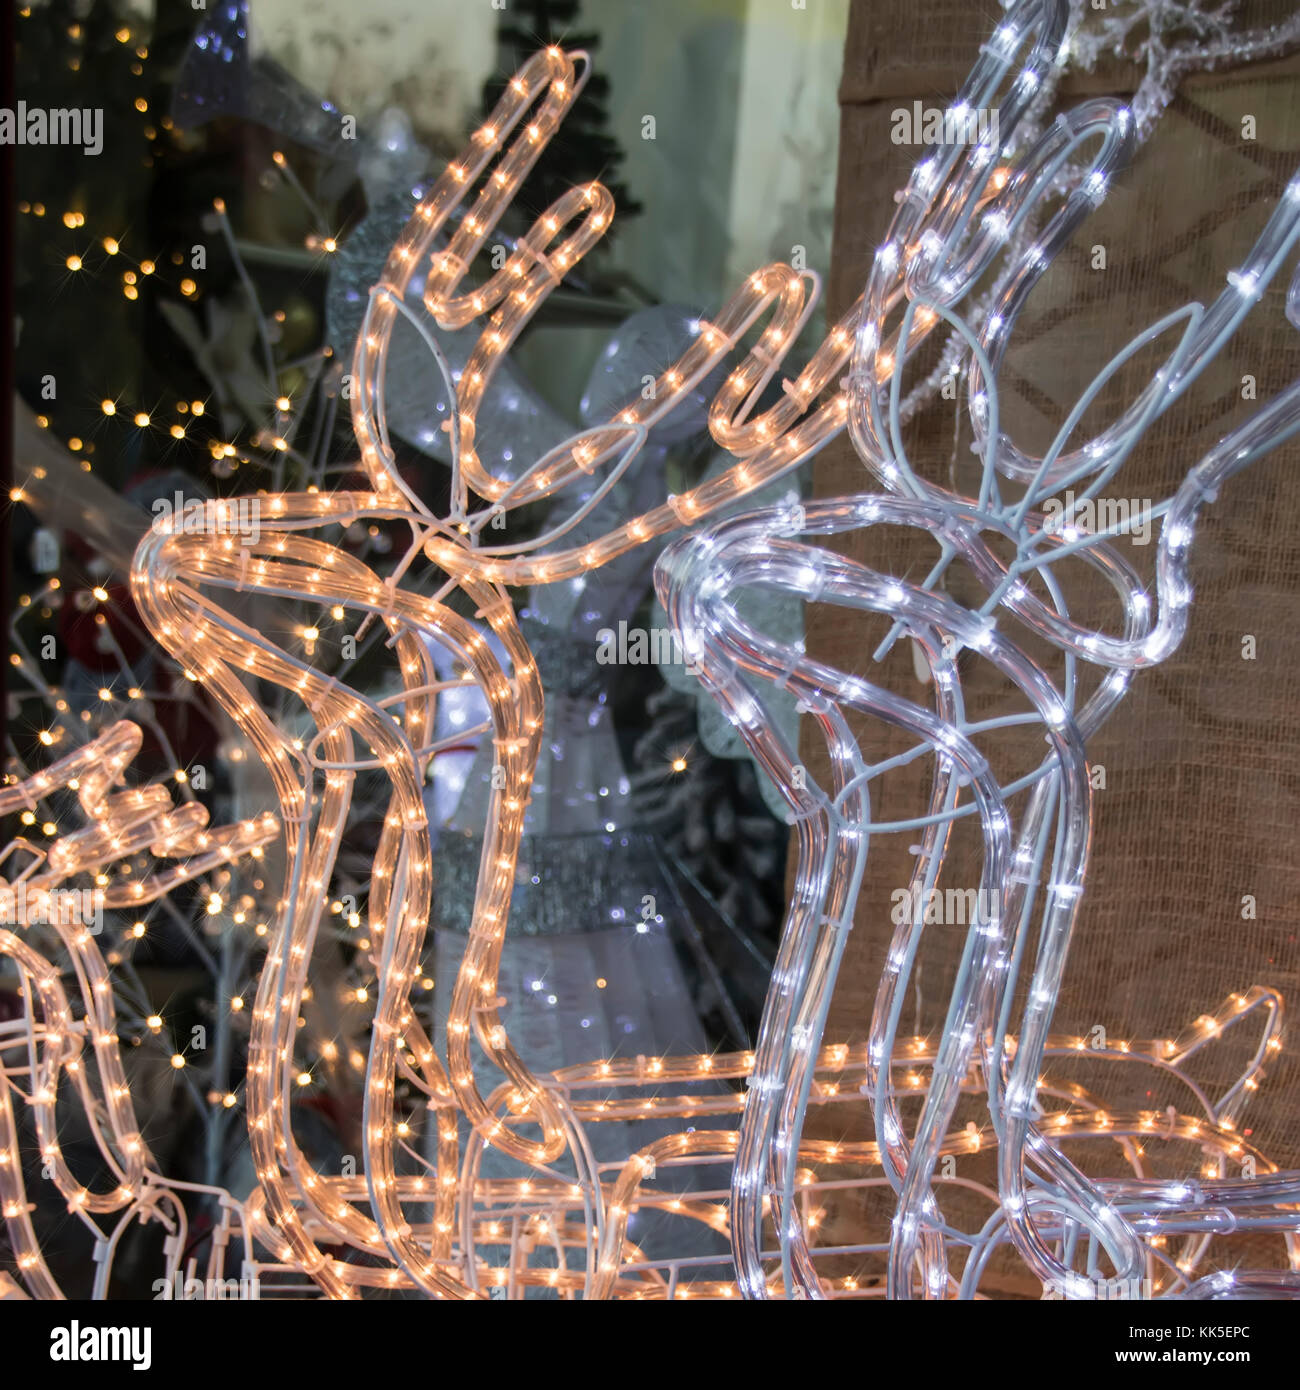 Holiday Lights Christmas deers. Stock Photo